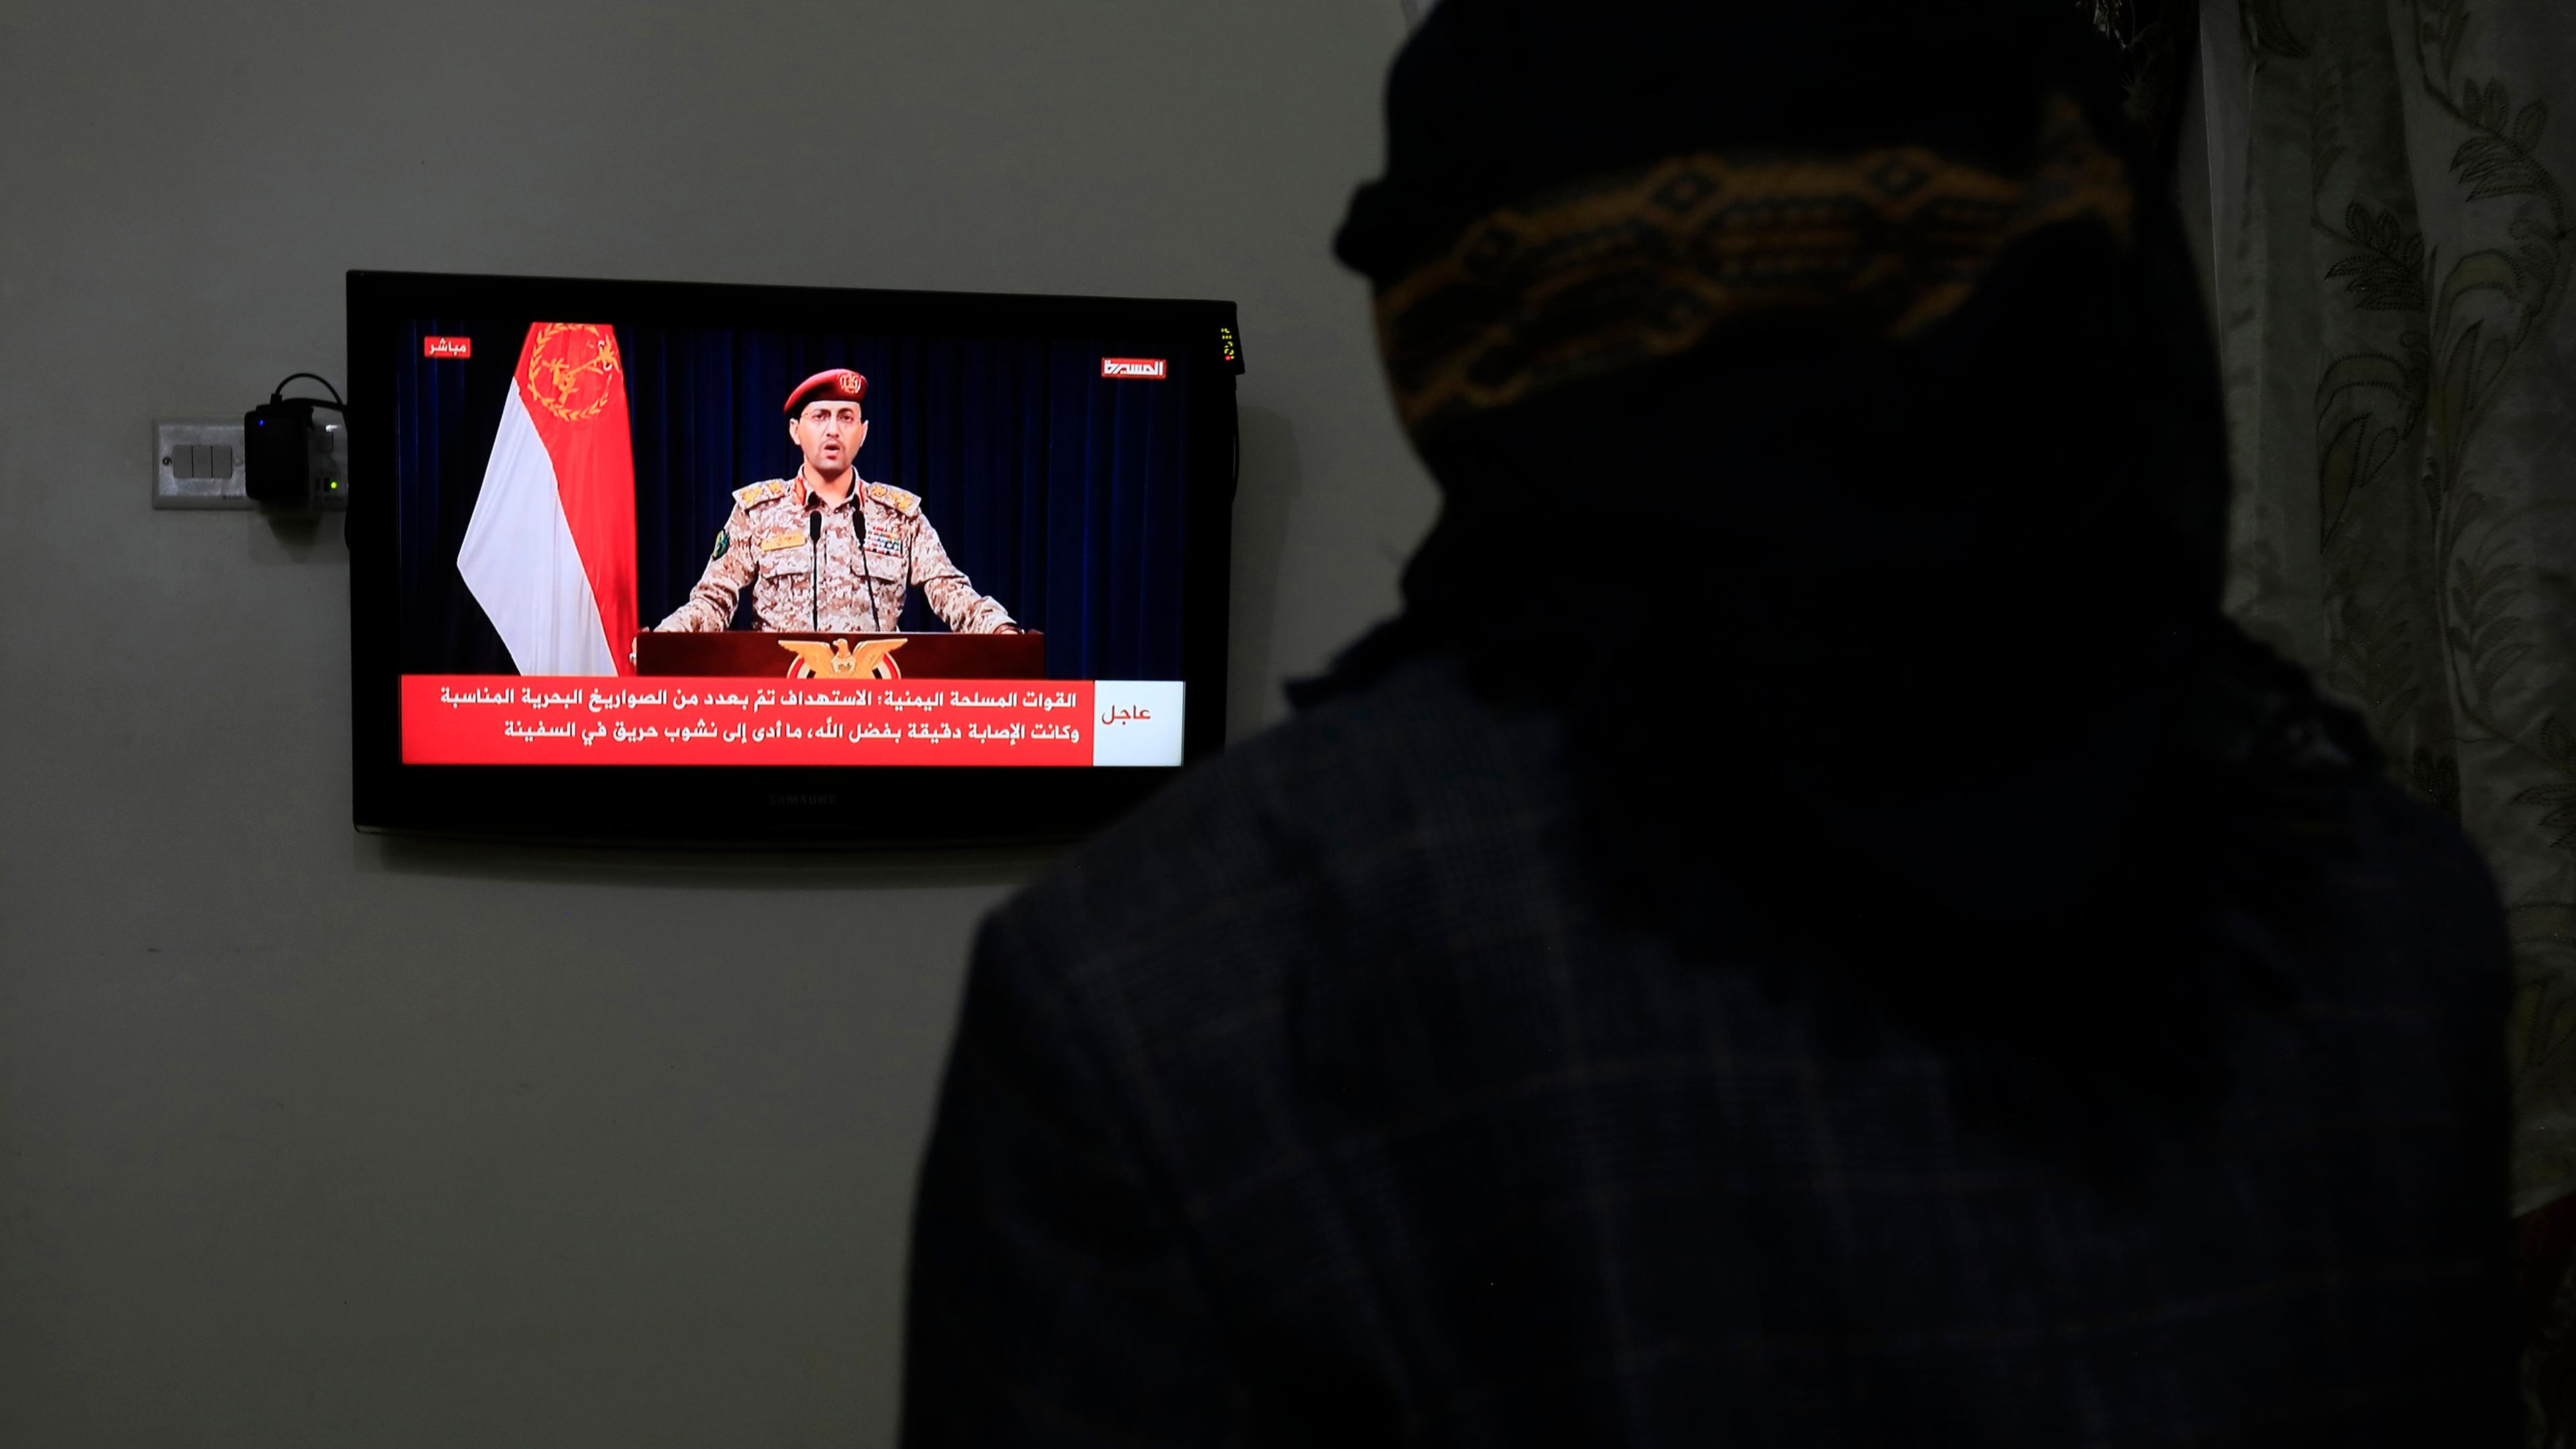 Sanaa, Jemen: Eine Person beobachtet einen Huthi-Militärsprecher bei einer Fernsehansprache über einen jüngsten Schiffsangriff im Golf von Aden.